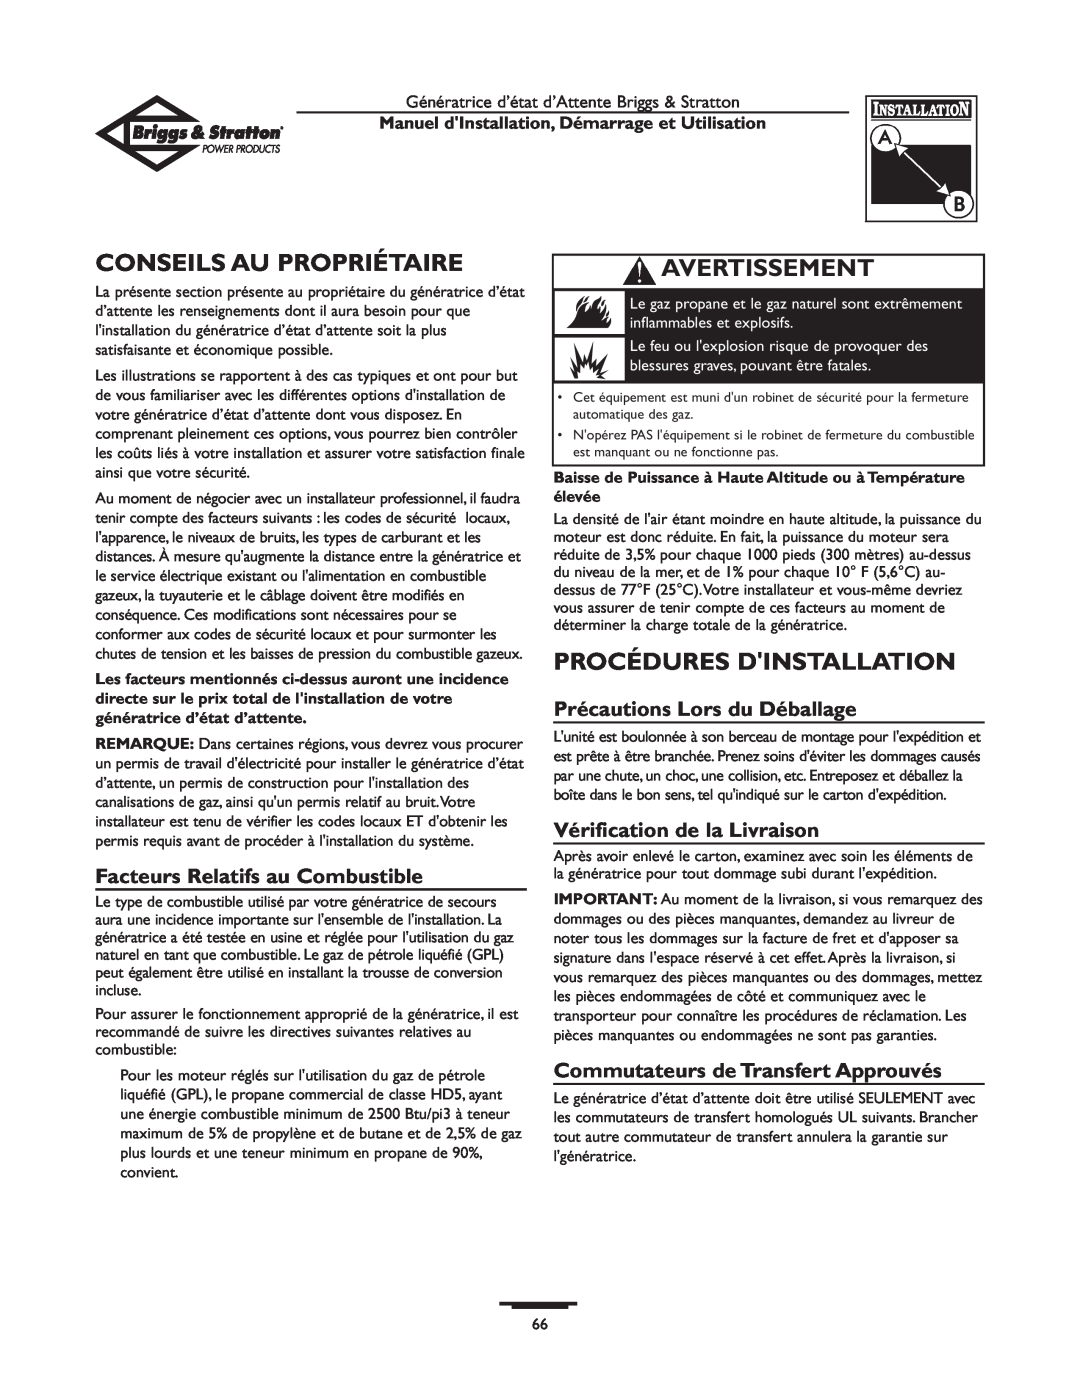 Briggs & Stratton 01897-0 manual Conseils Au Propriétaire, Procédures Dinstallation, Facteurs Relatifs au Combustible 